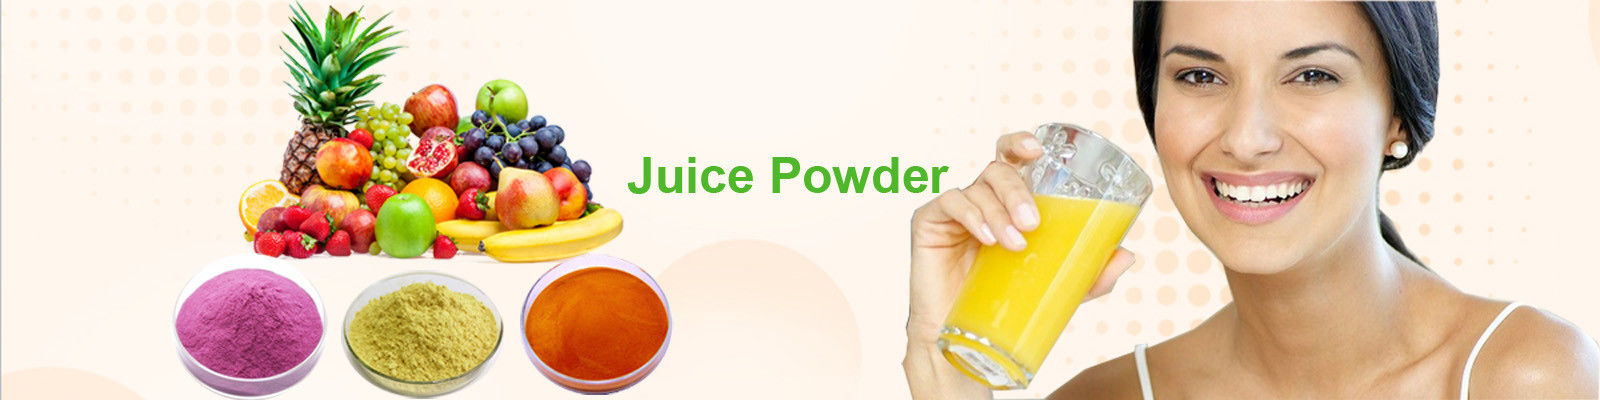 Fruit Juice Powder